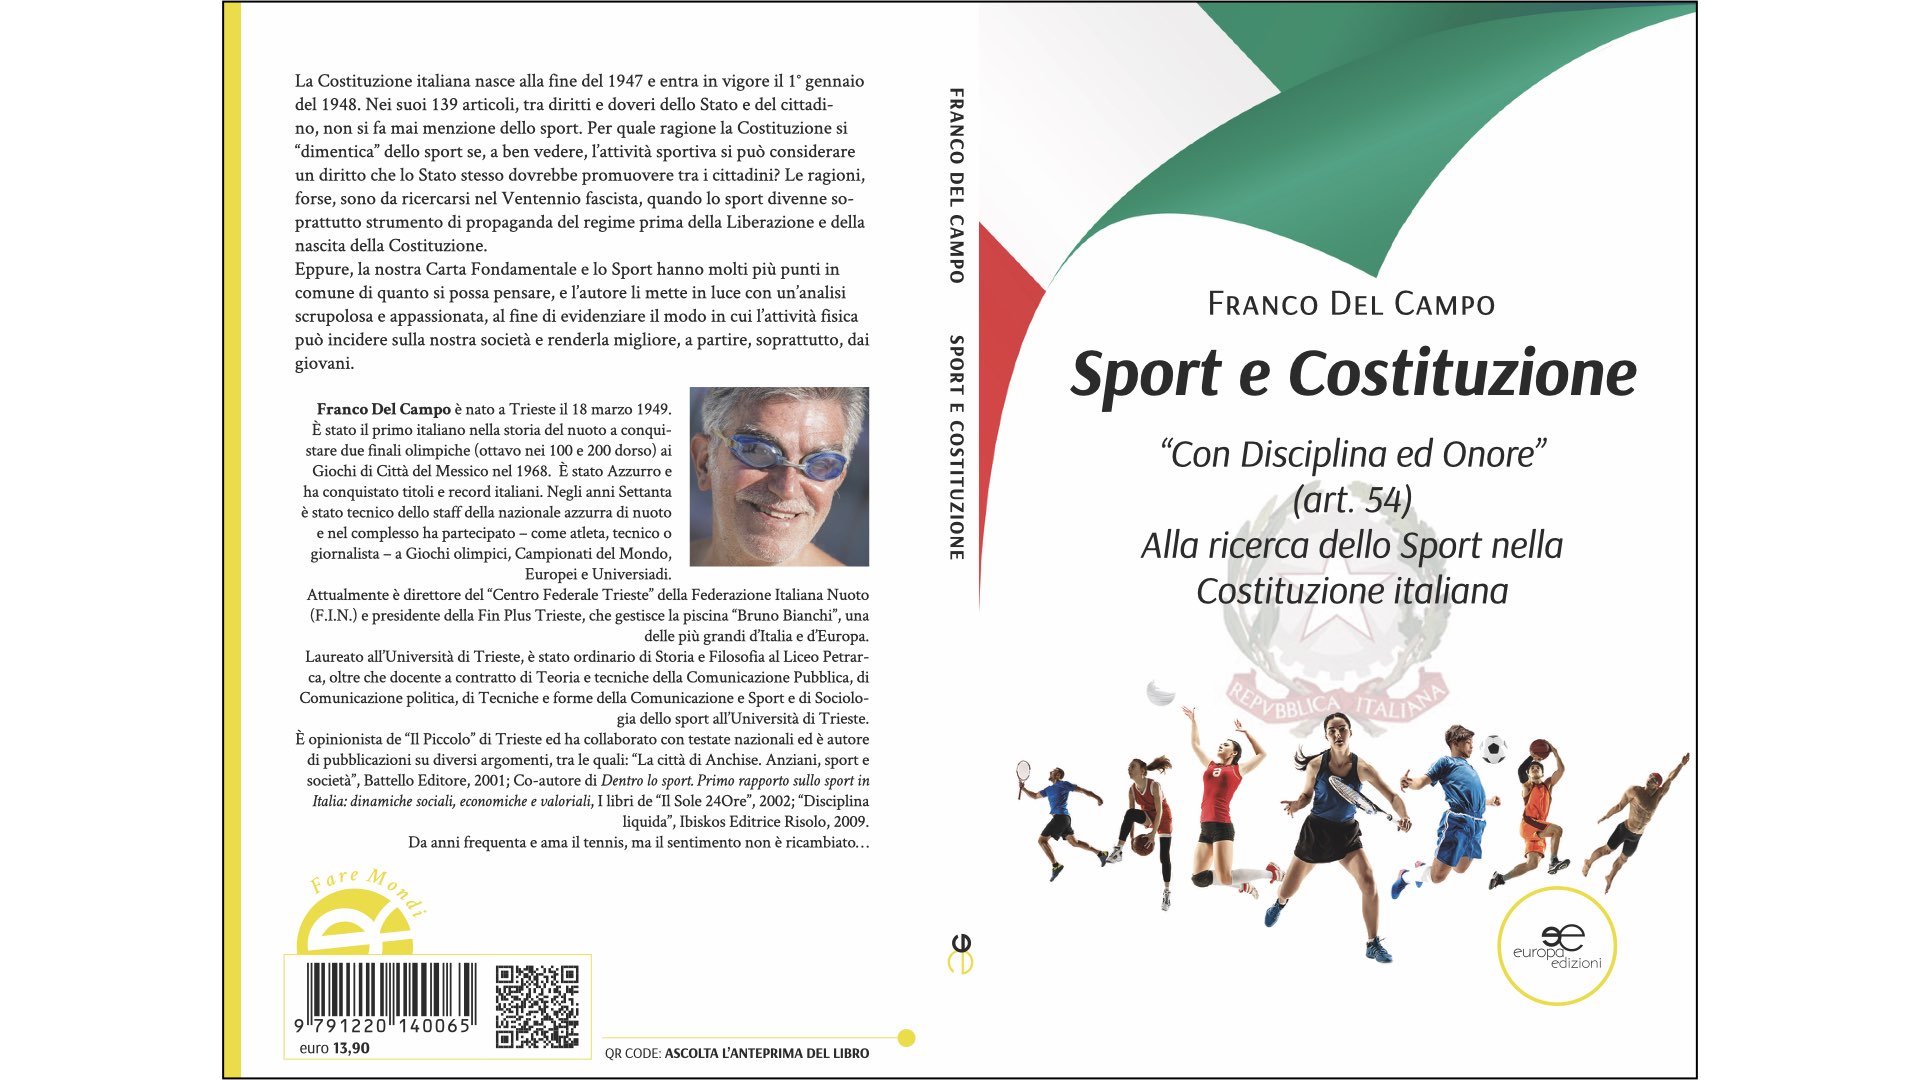 Scopri di più sull'articolo “Sport e costituzione”, il nuovo libro di Franco Del Campo